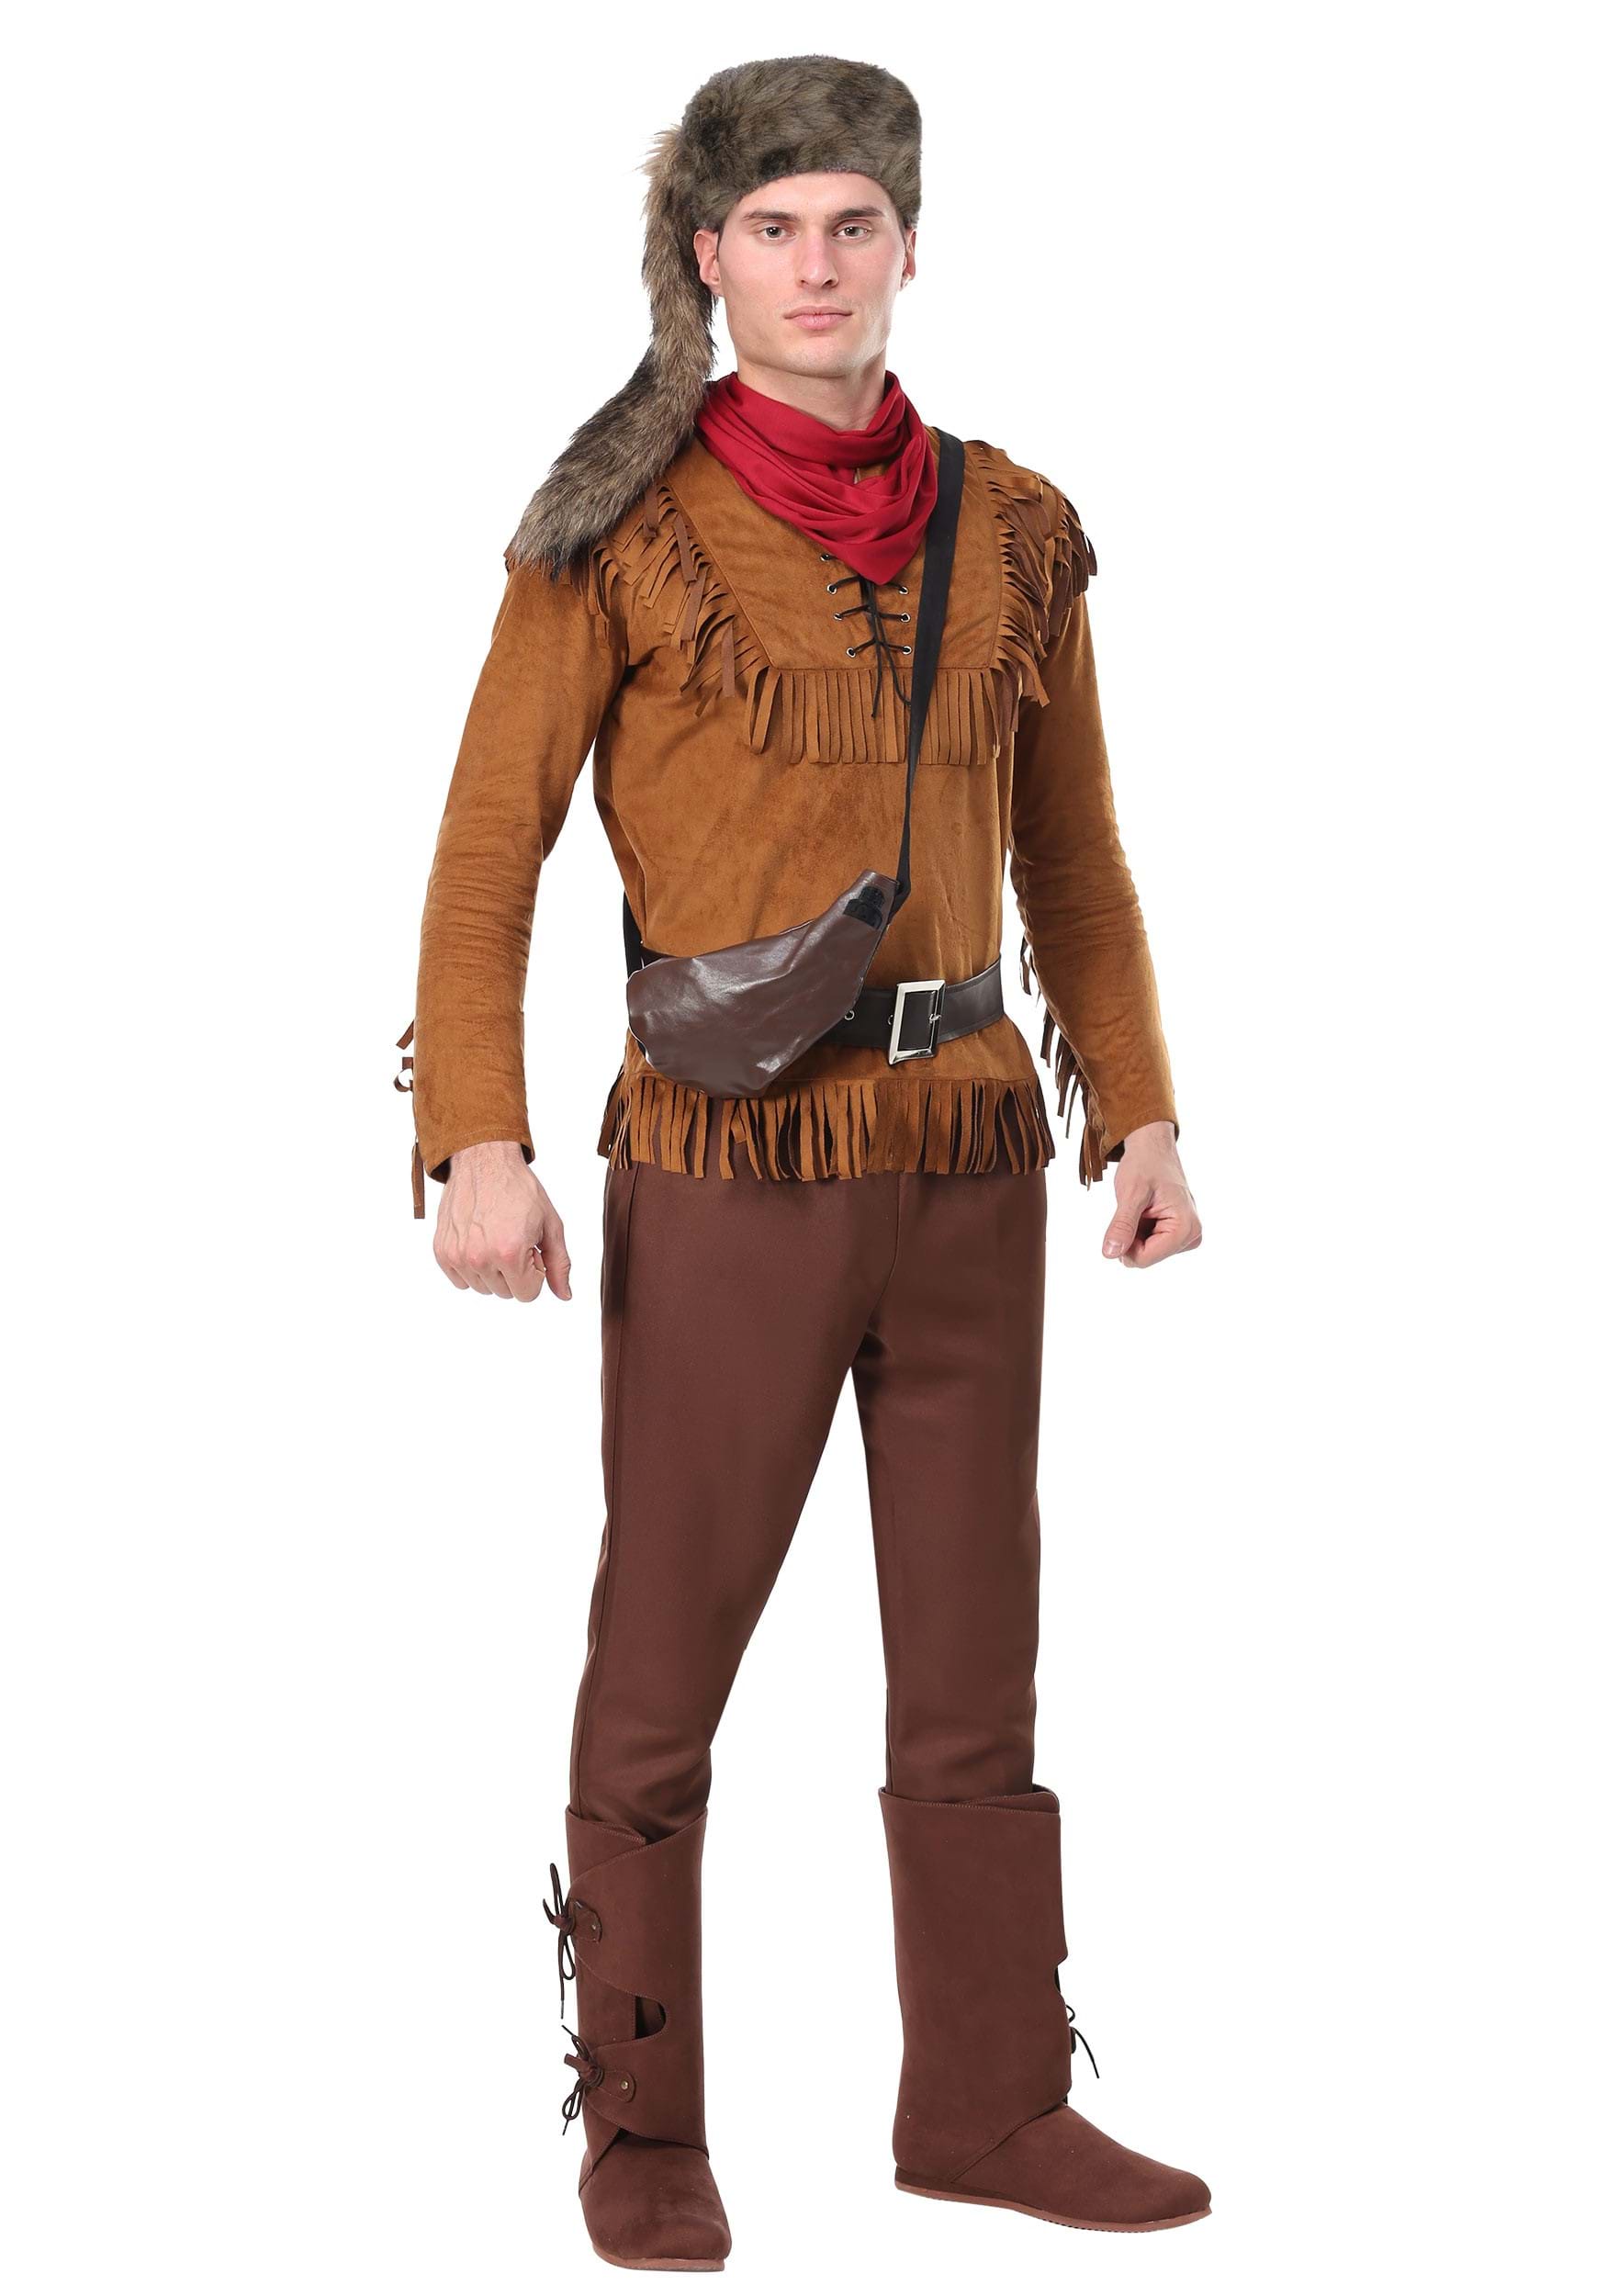 Davy Crockett Fancy Dress Costume For Adults